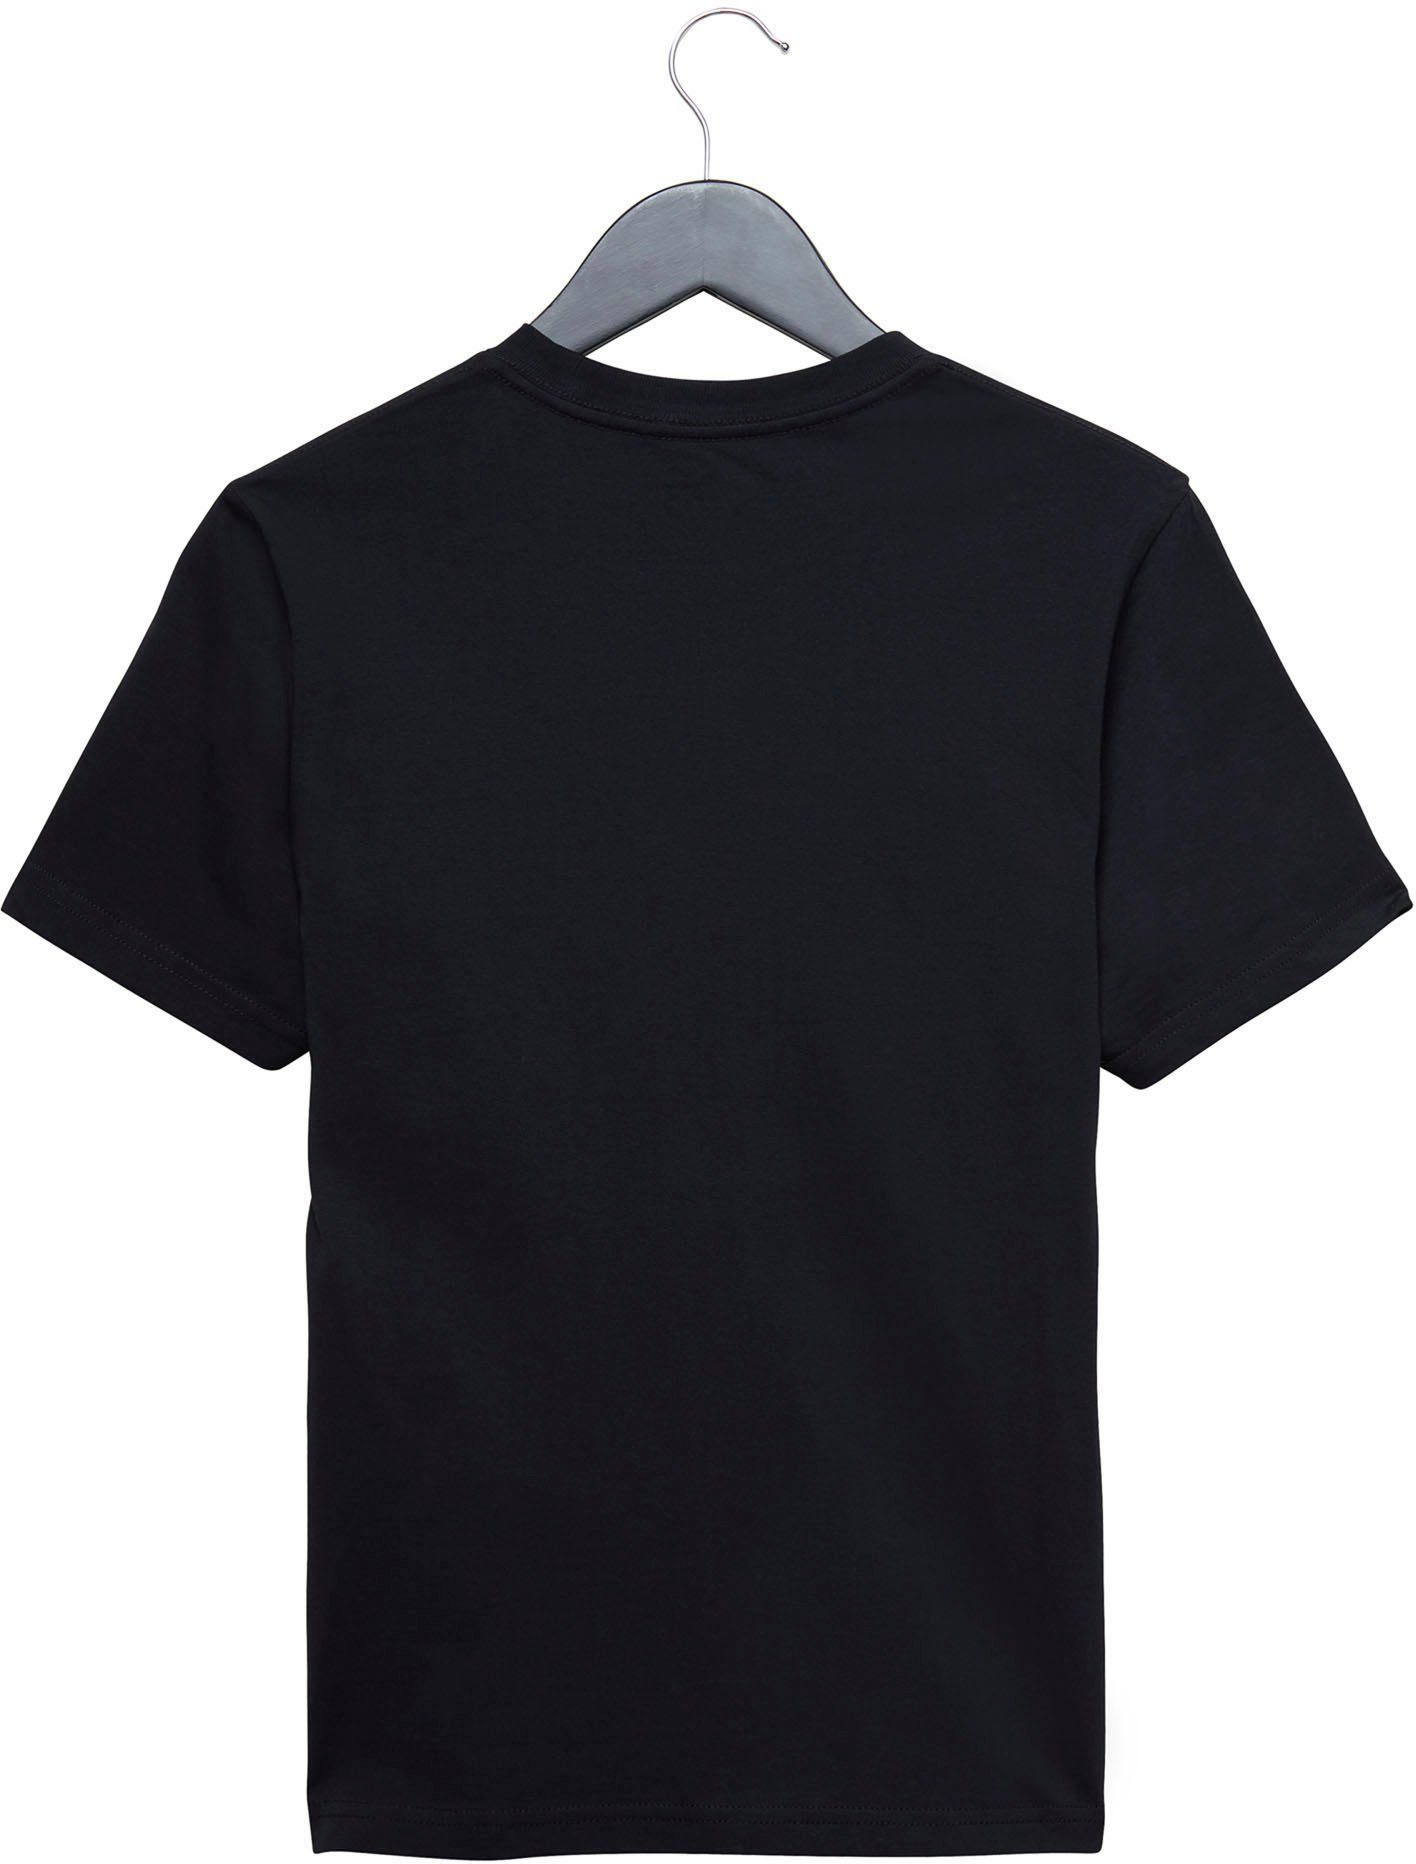 Vans KIDS CLASSIC VANS schwarz T-Shirt